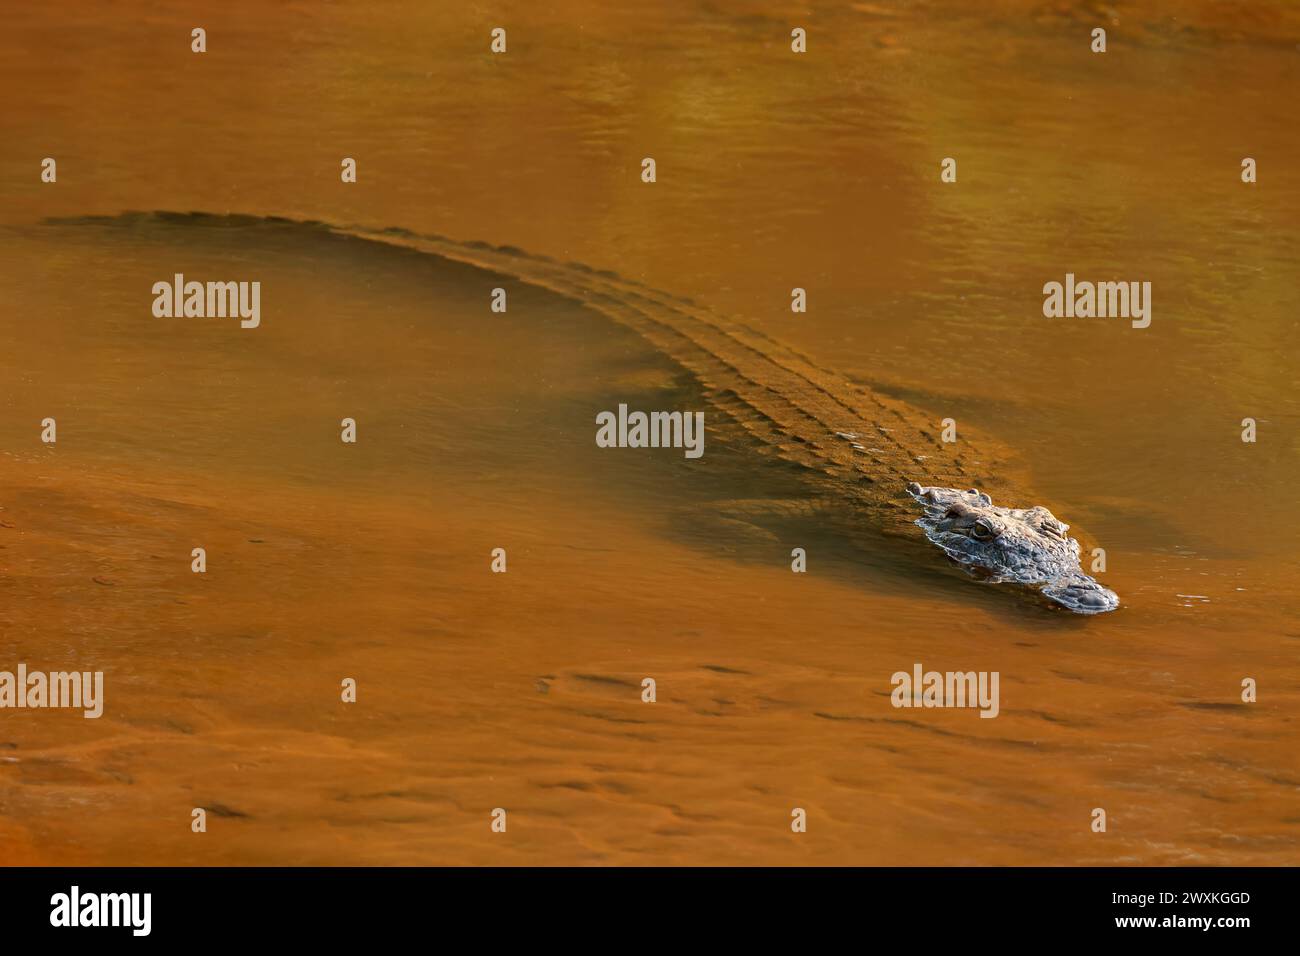 Un grand crocodile du Nil (Crocodylus niloticus) en eau peu profonde, parc national Kruger, Afrique du Sud Banque D'Images